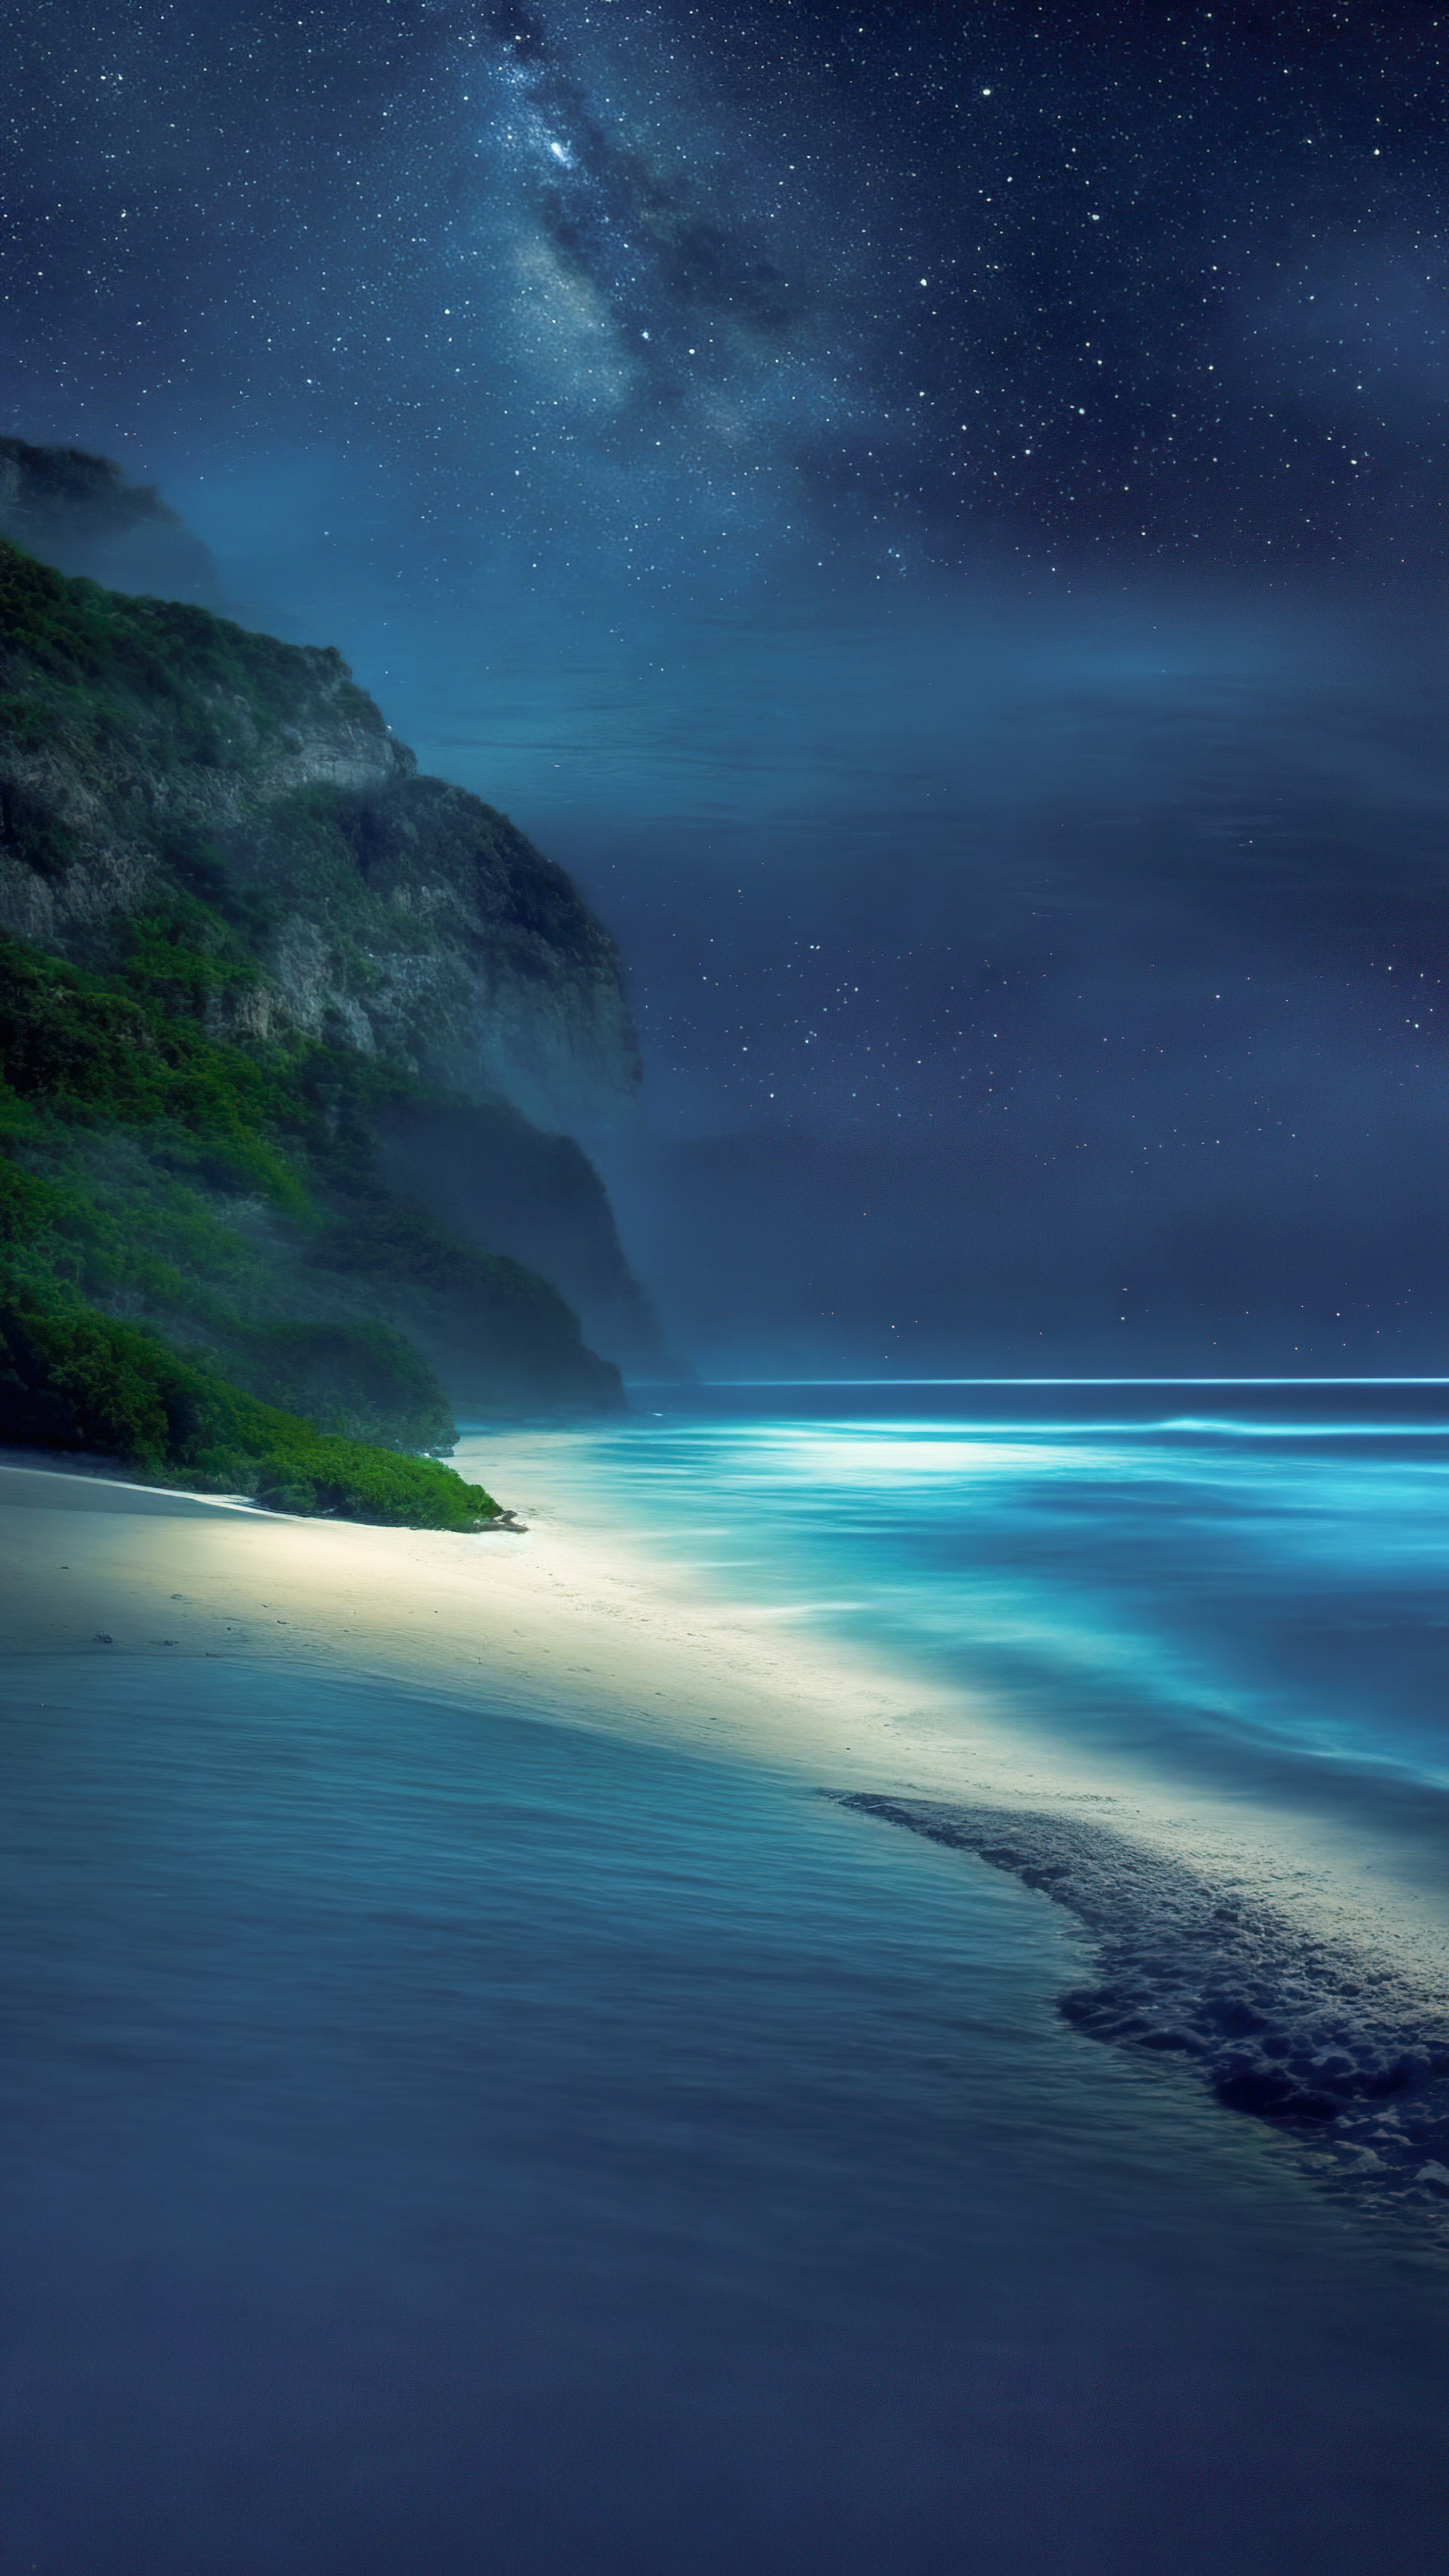 Transformez l'écran de votre appareil avec notre fond d'écran de paysage de plage, dépeignant une plage tranquille la nuit, avec les vagues caressant doucement le rivage et une voûte d'étoiles au-dessus.